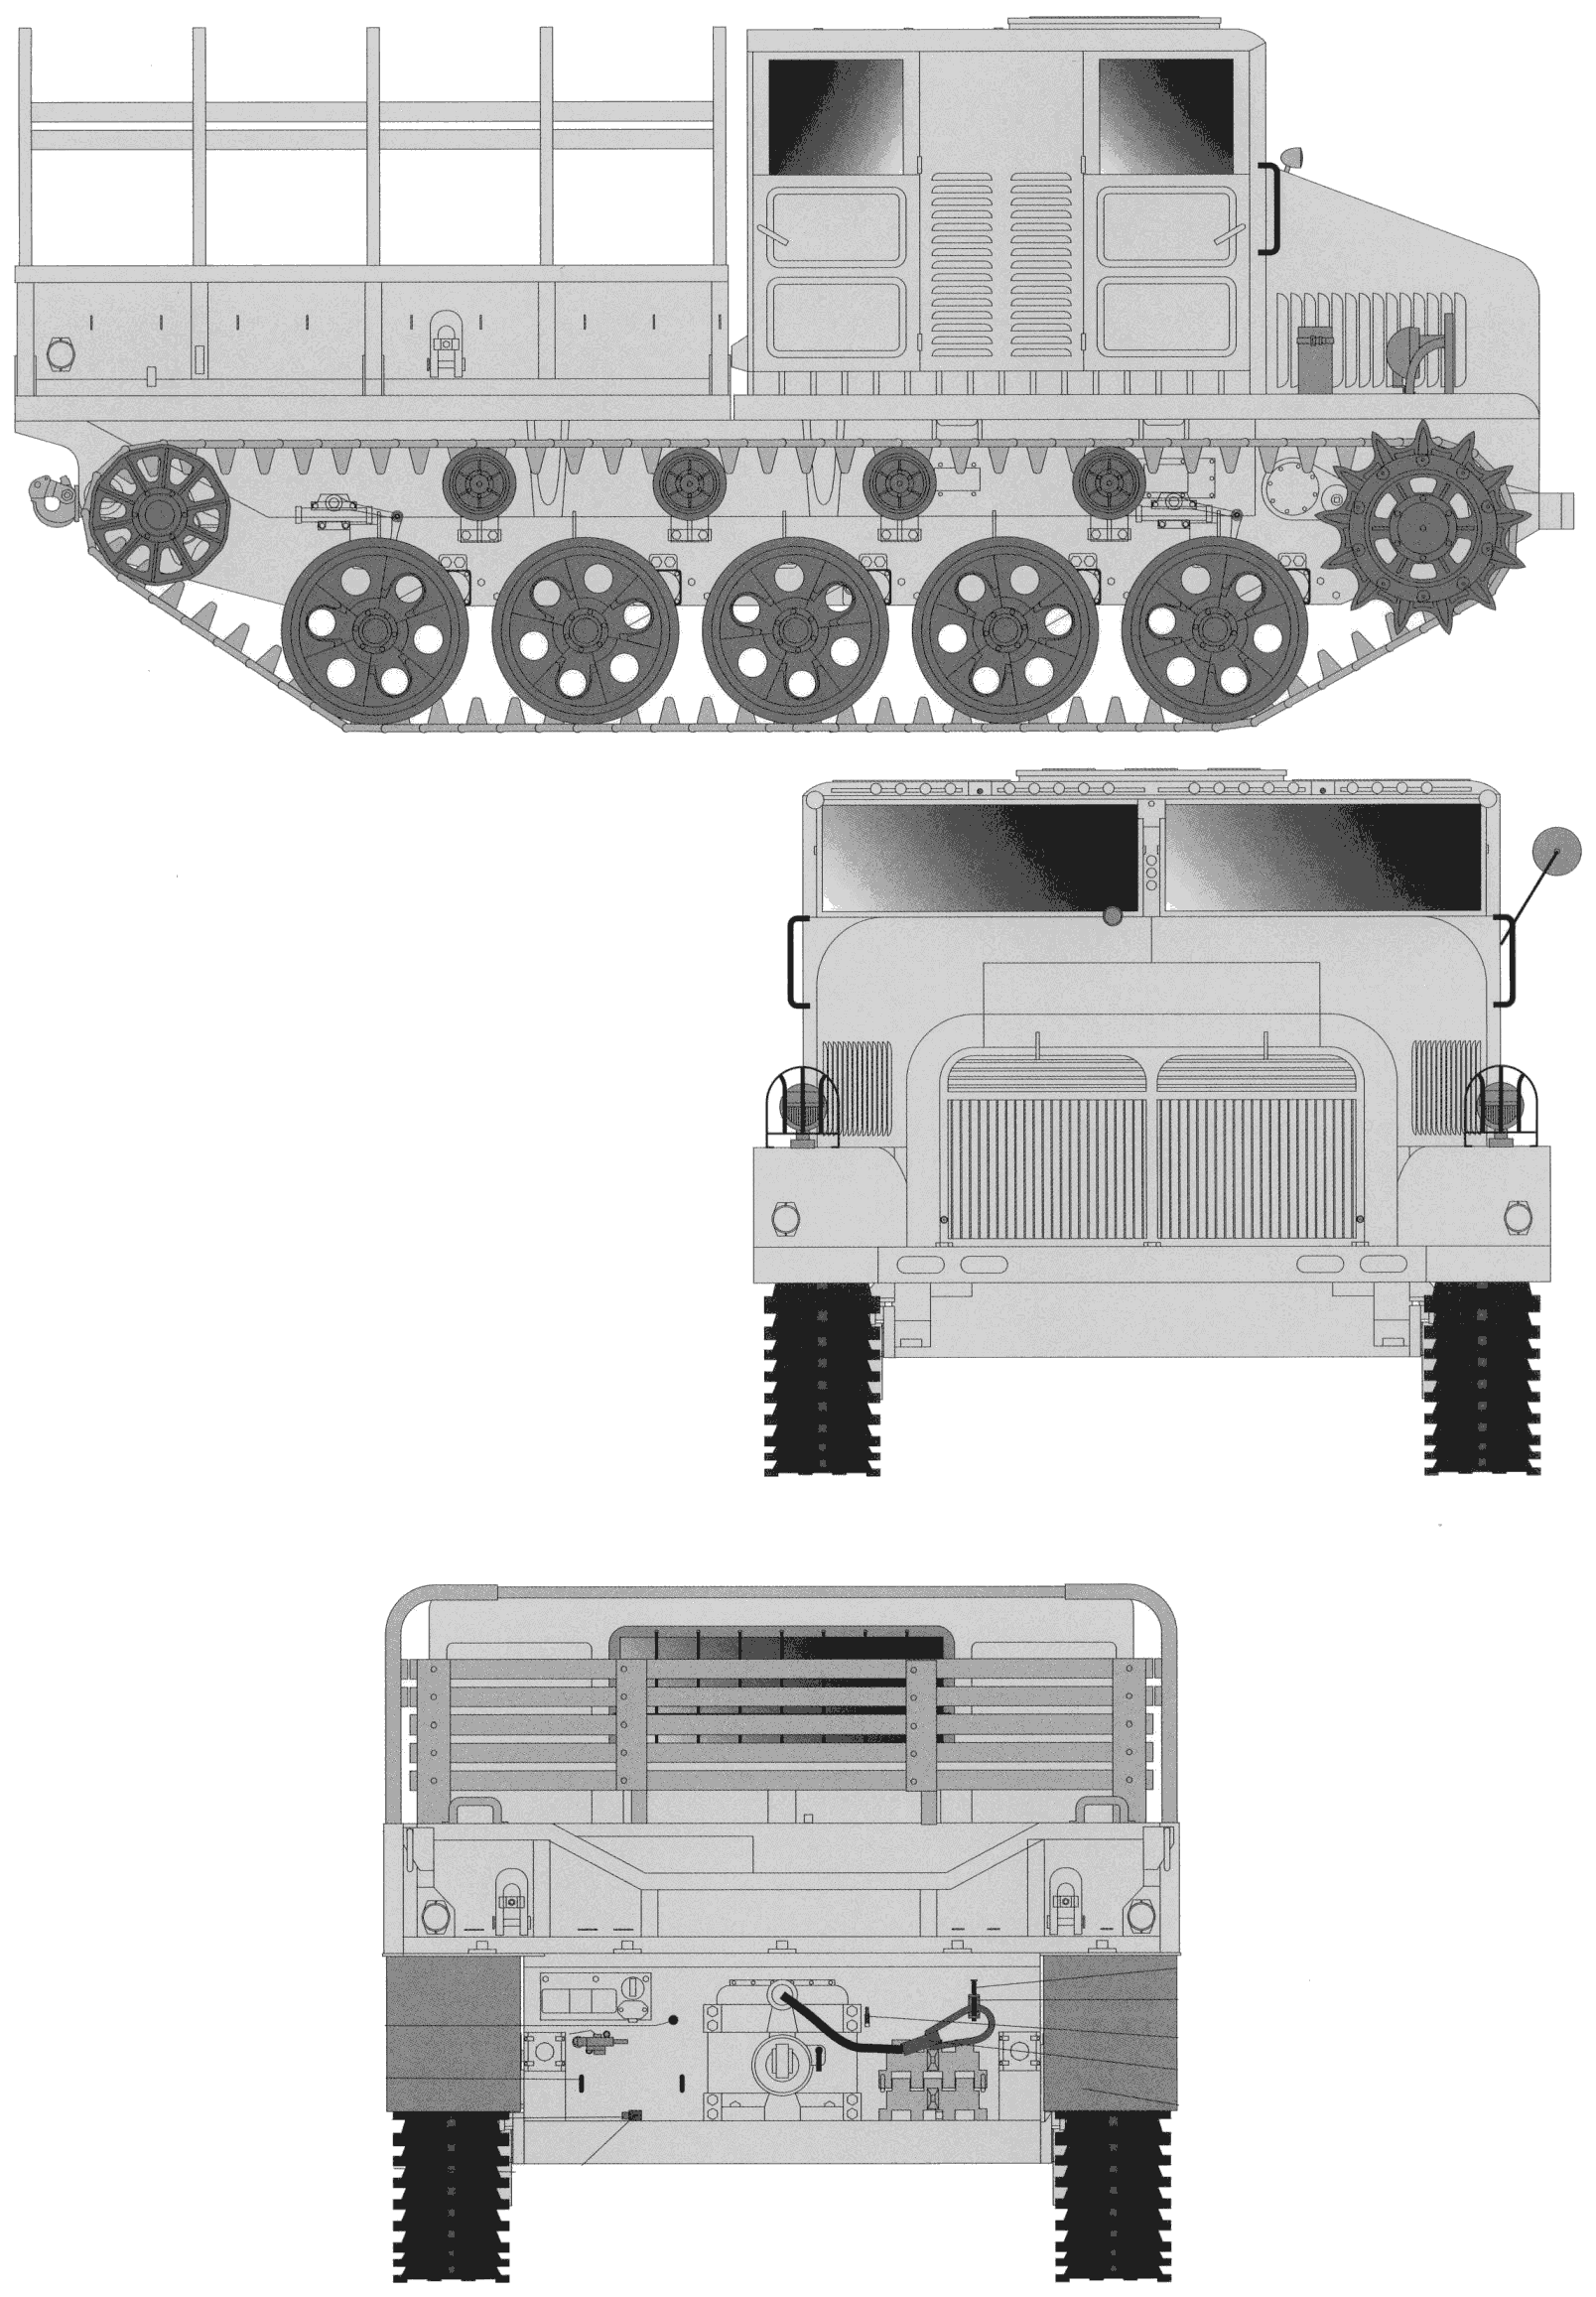 Mazur D-350 blueprint